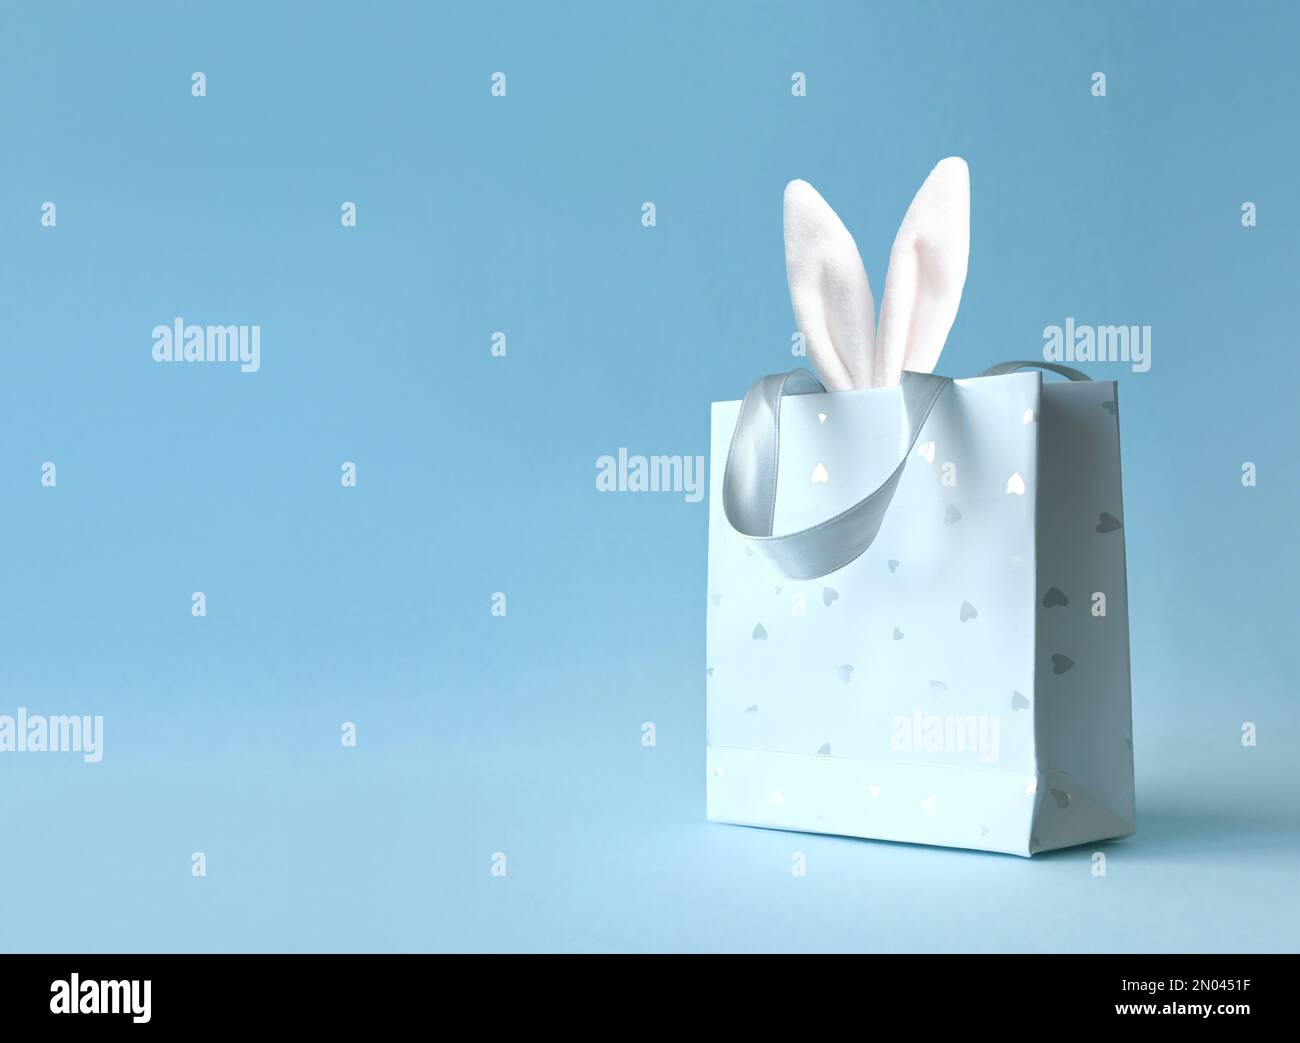 Oreilles de lapin de Pâques dans un sac en papier. Arrière-plan bleu. Espace pour le texte. Joyeuses pâques Banque D'Images